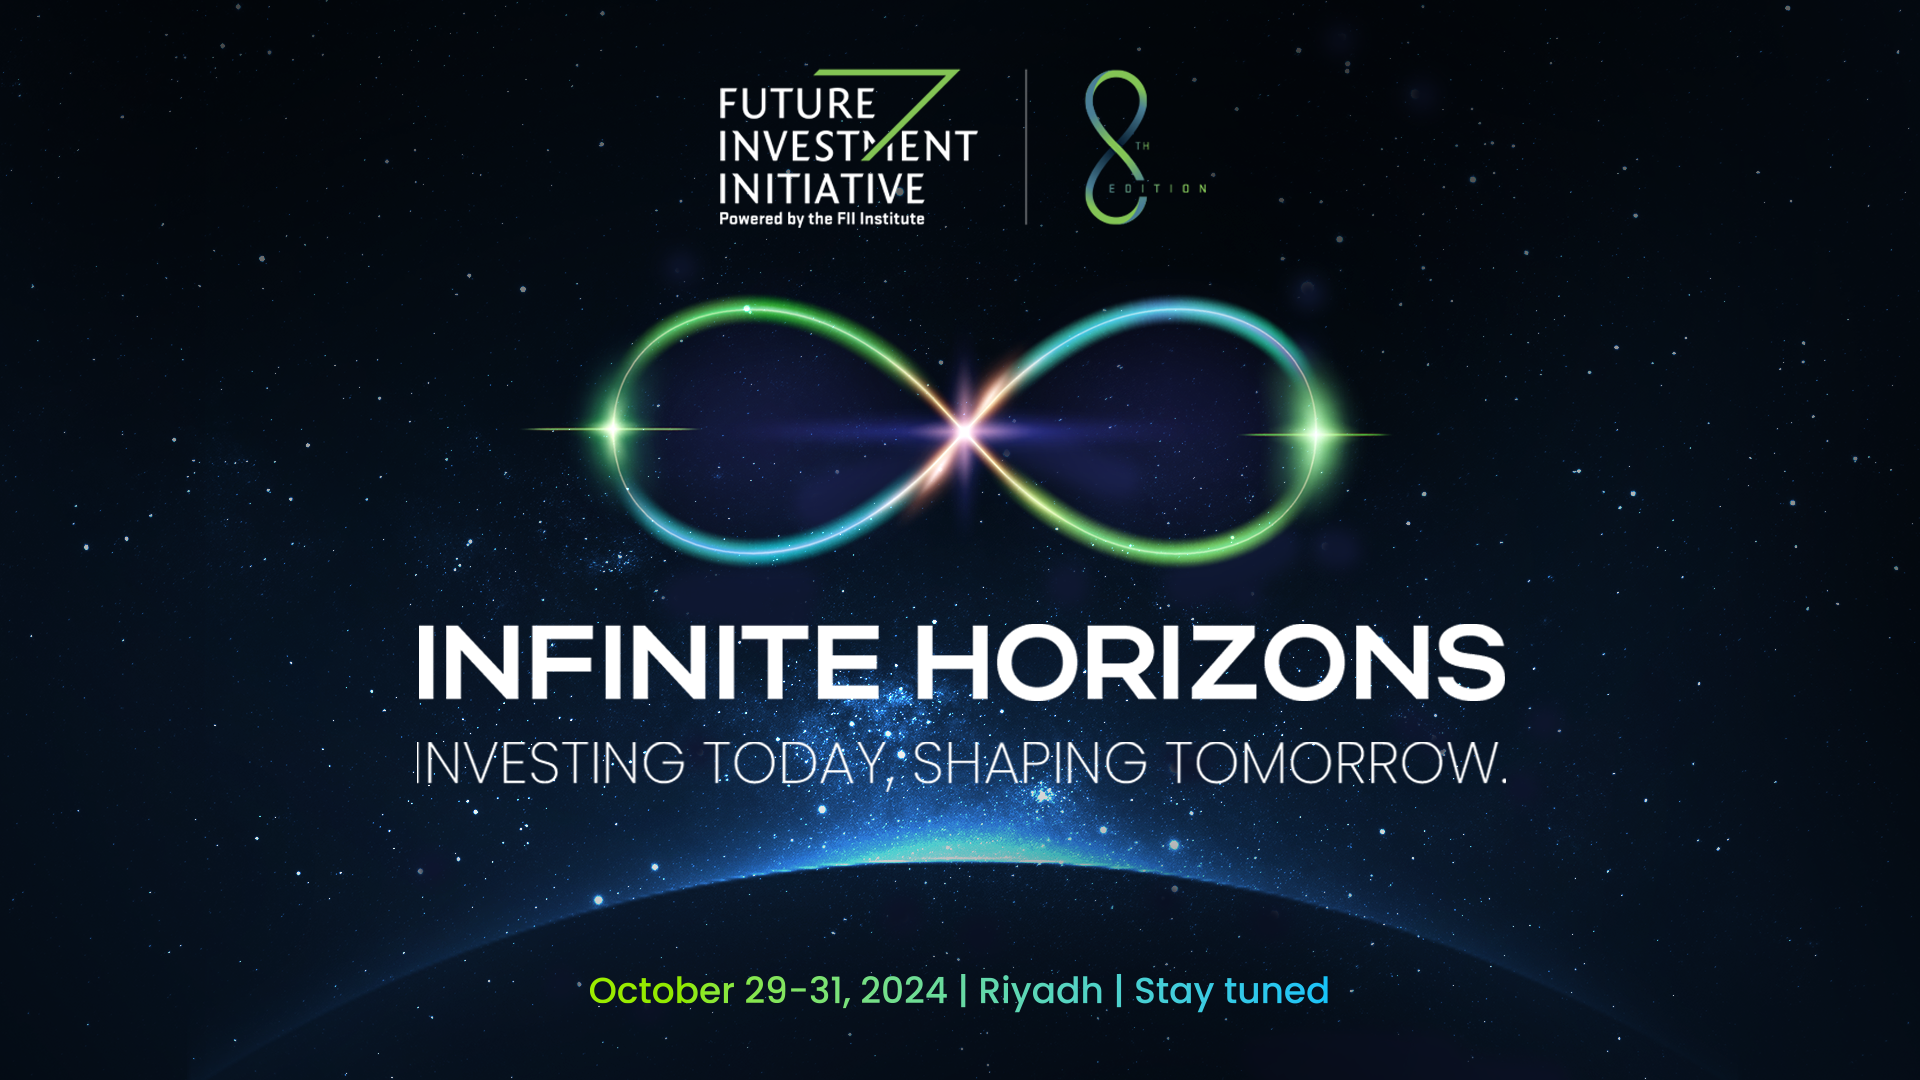 揭示第八届未来投资倡议主题："无限视野：投资今日，塑造明天"